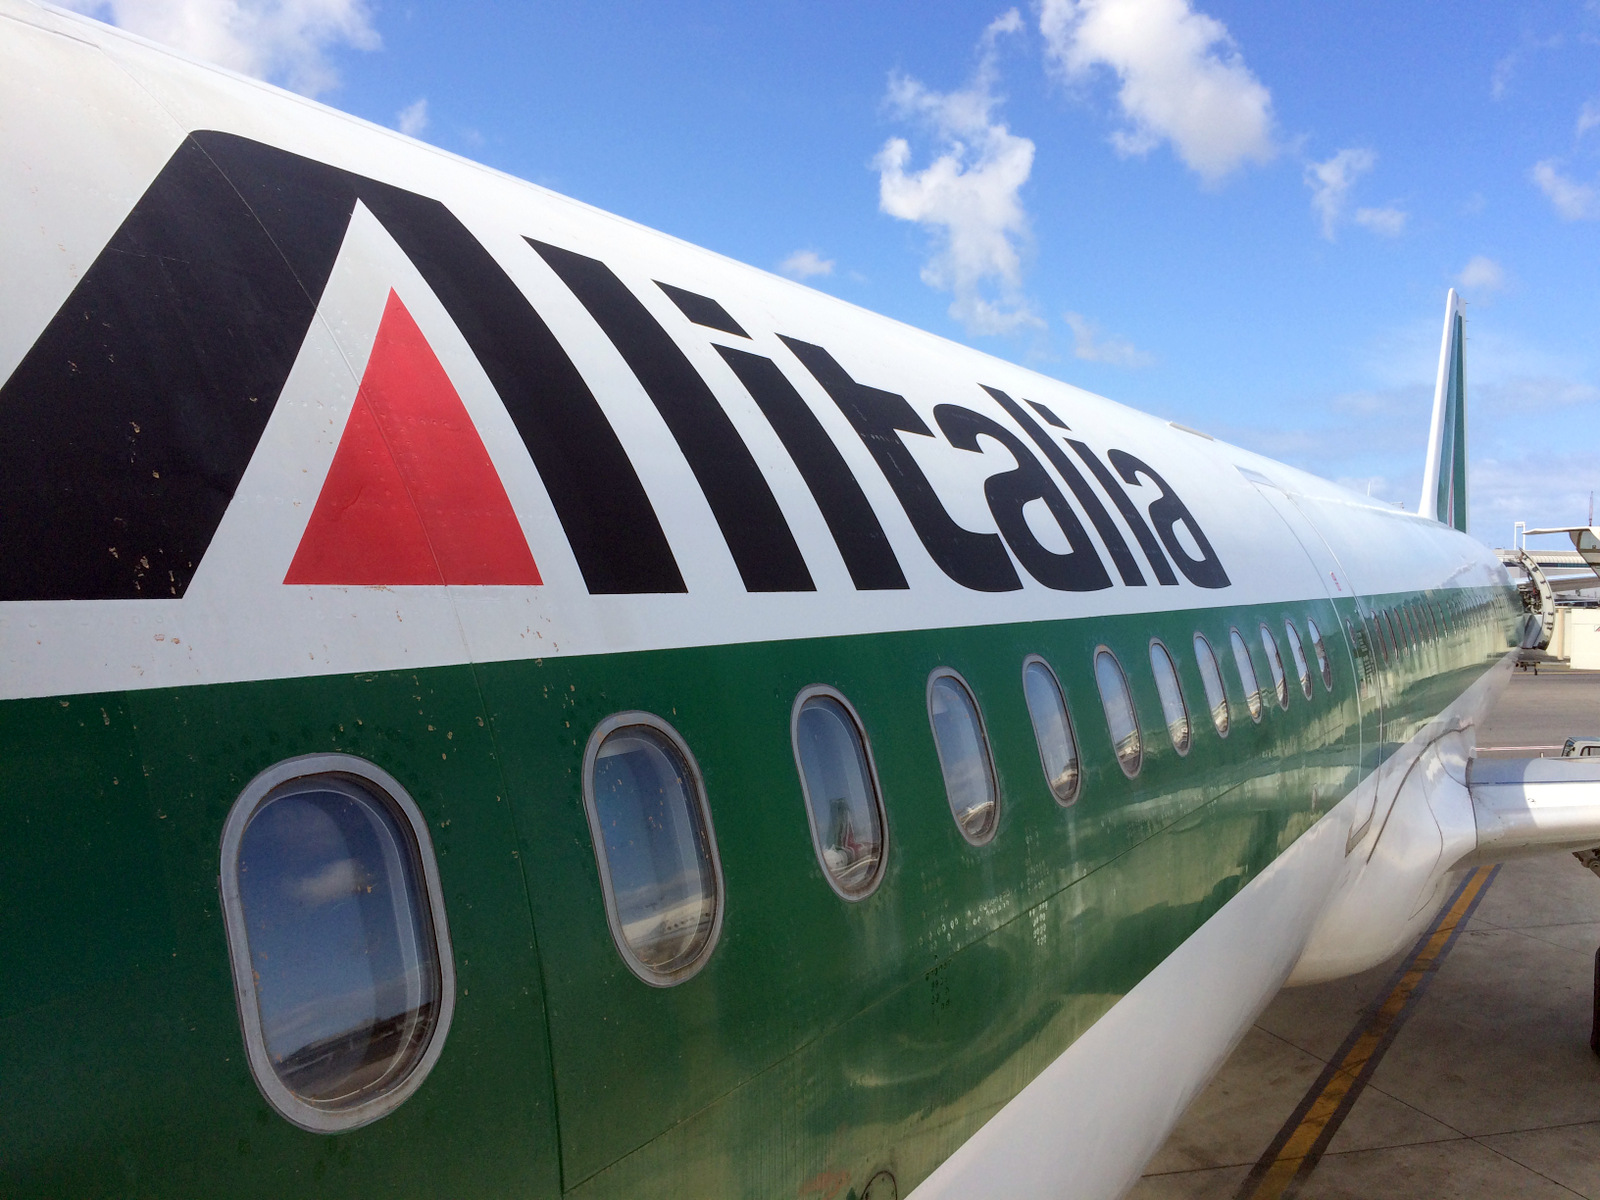 Авиакомпания Alitalia продолжит выполнять полеты, несмотря на процедуру банкротства